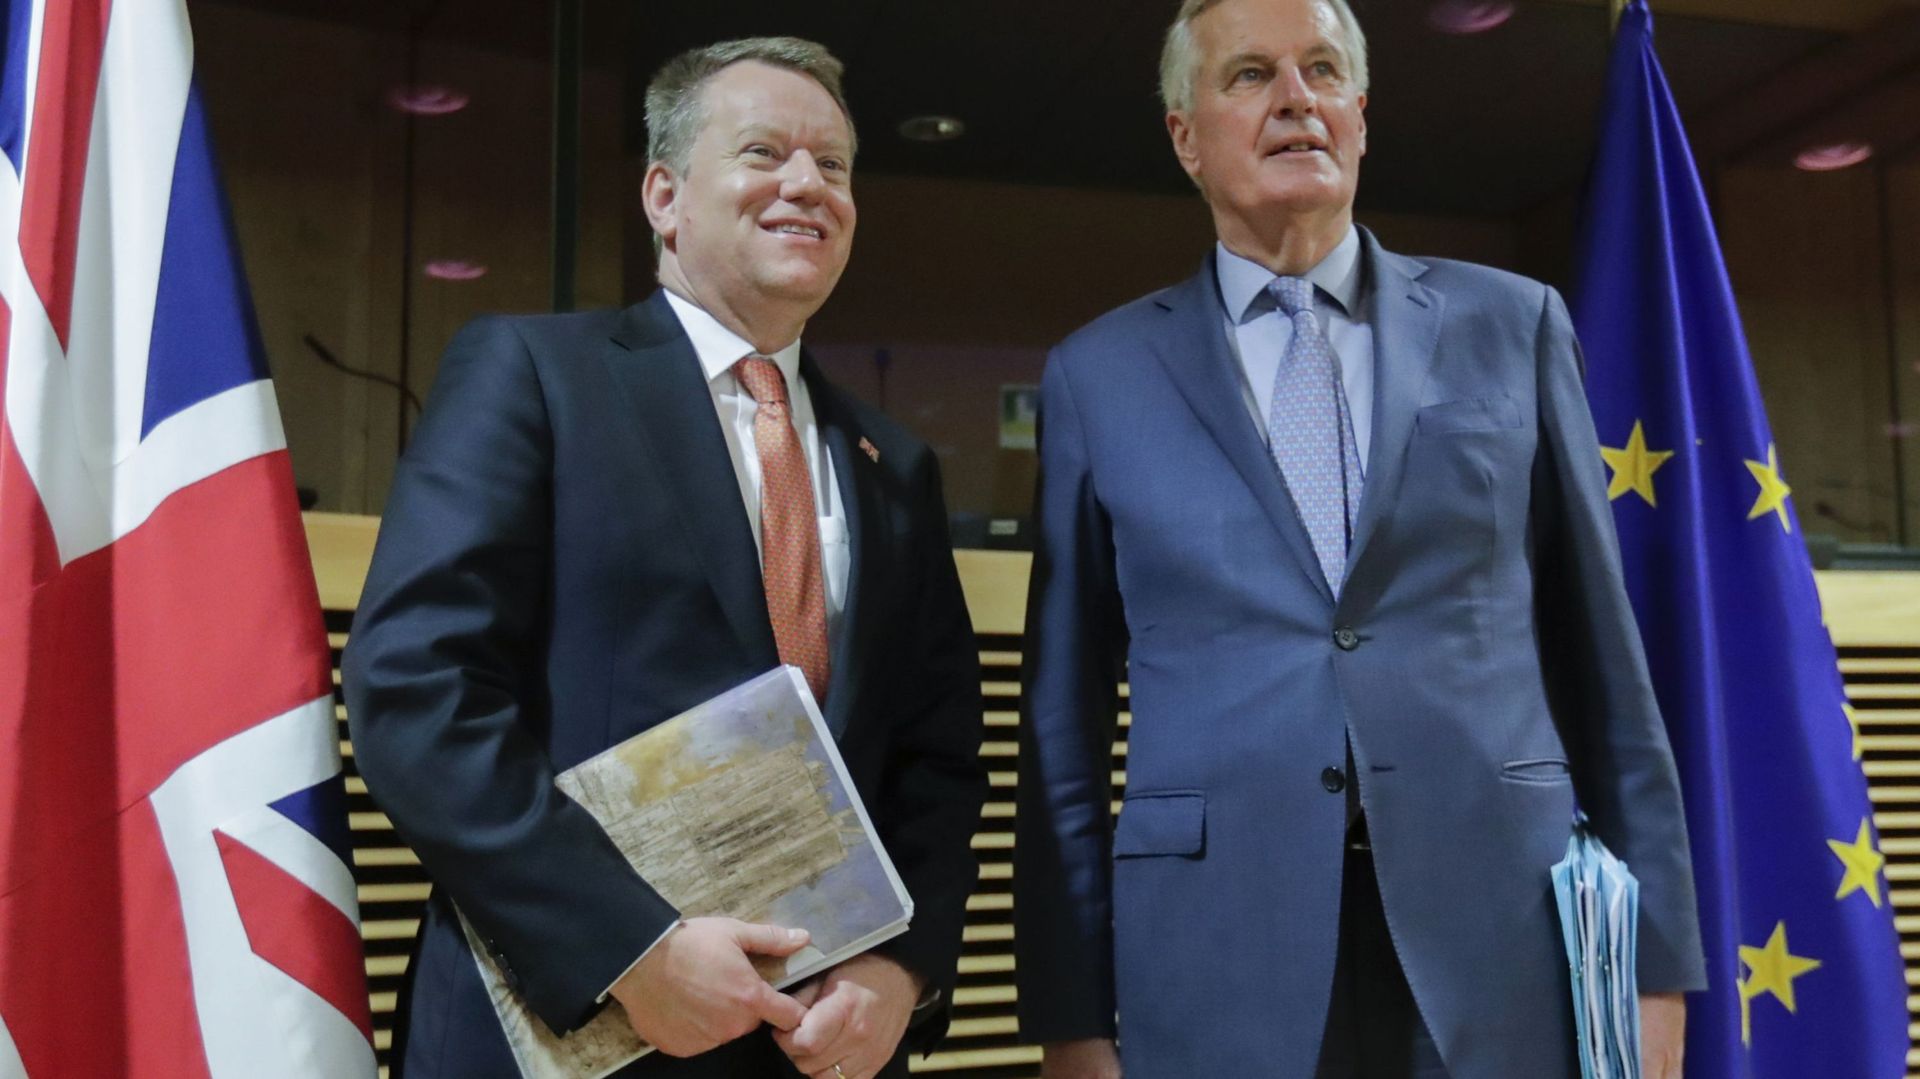 Le négociateur en chef de l'Union européenne pour l'accord de Brexit, Michel Barnier (à droite), et le conseiller pour l'Europe du Premier ministre britannique, David Frost, posent pour une photo au début du premier cycle de négociations commerciales post